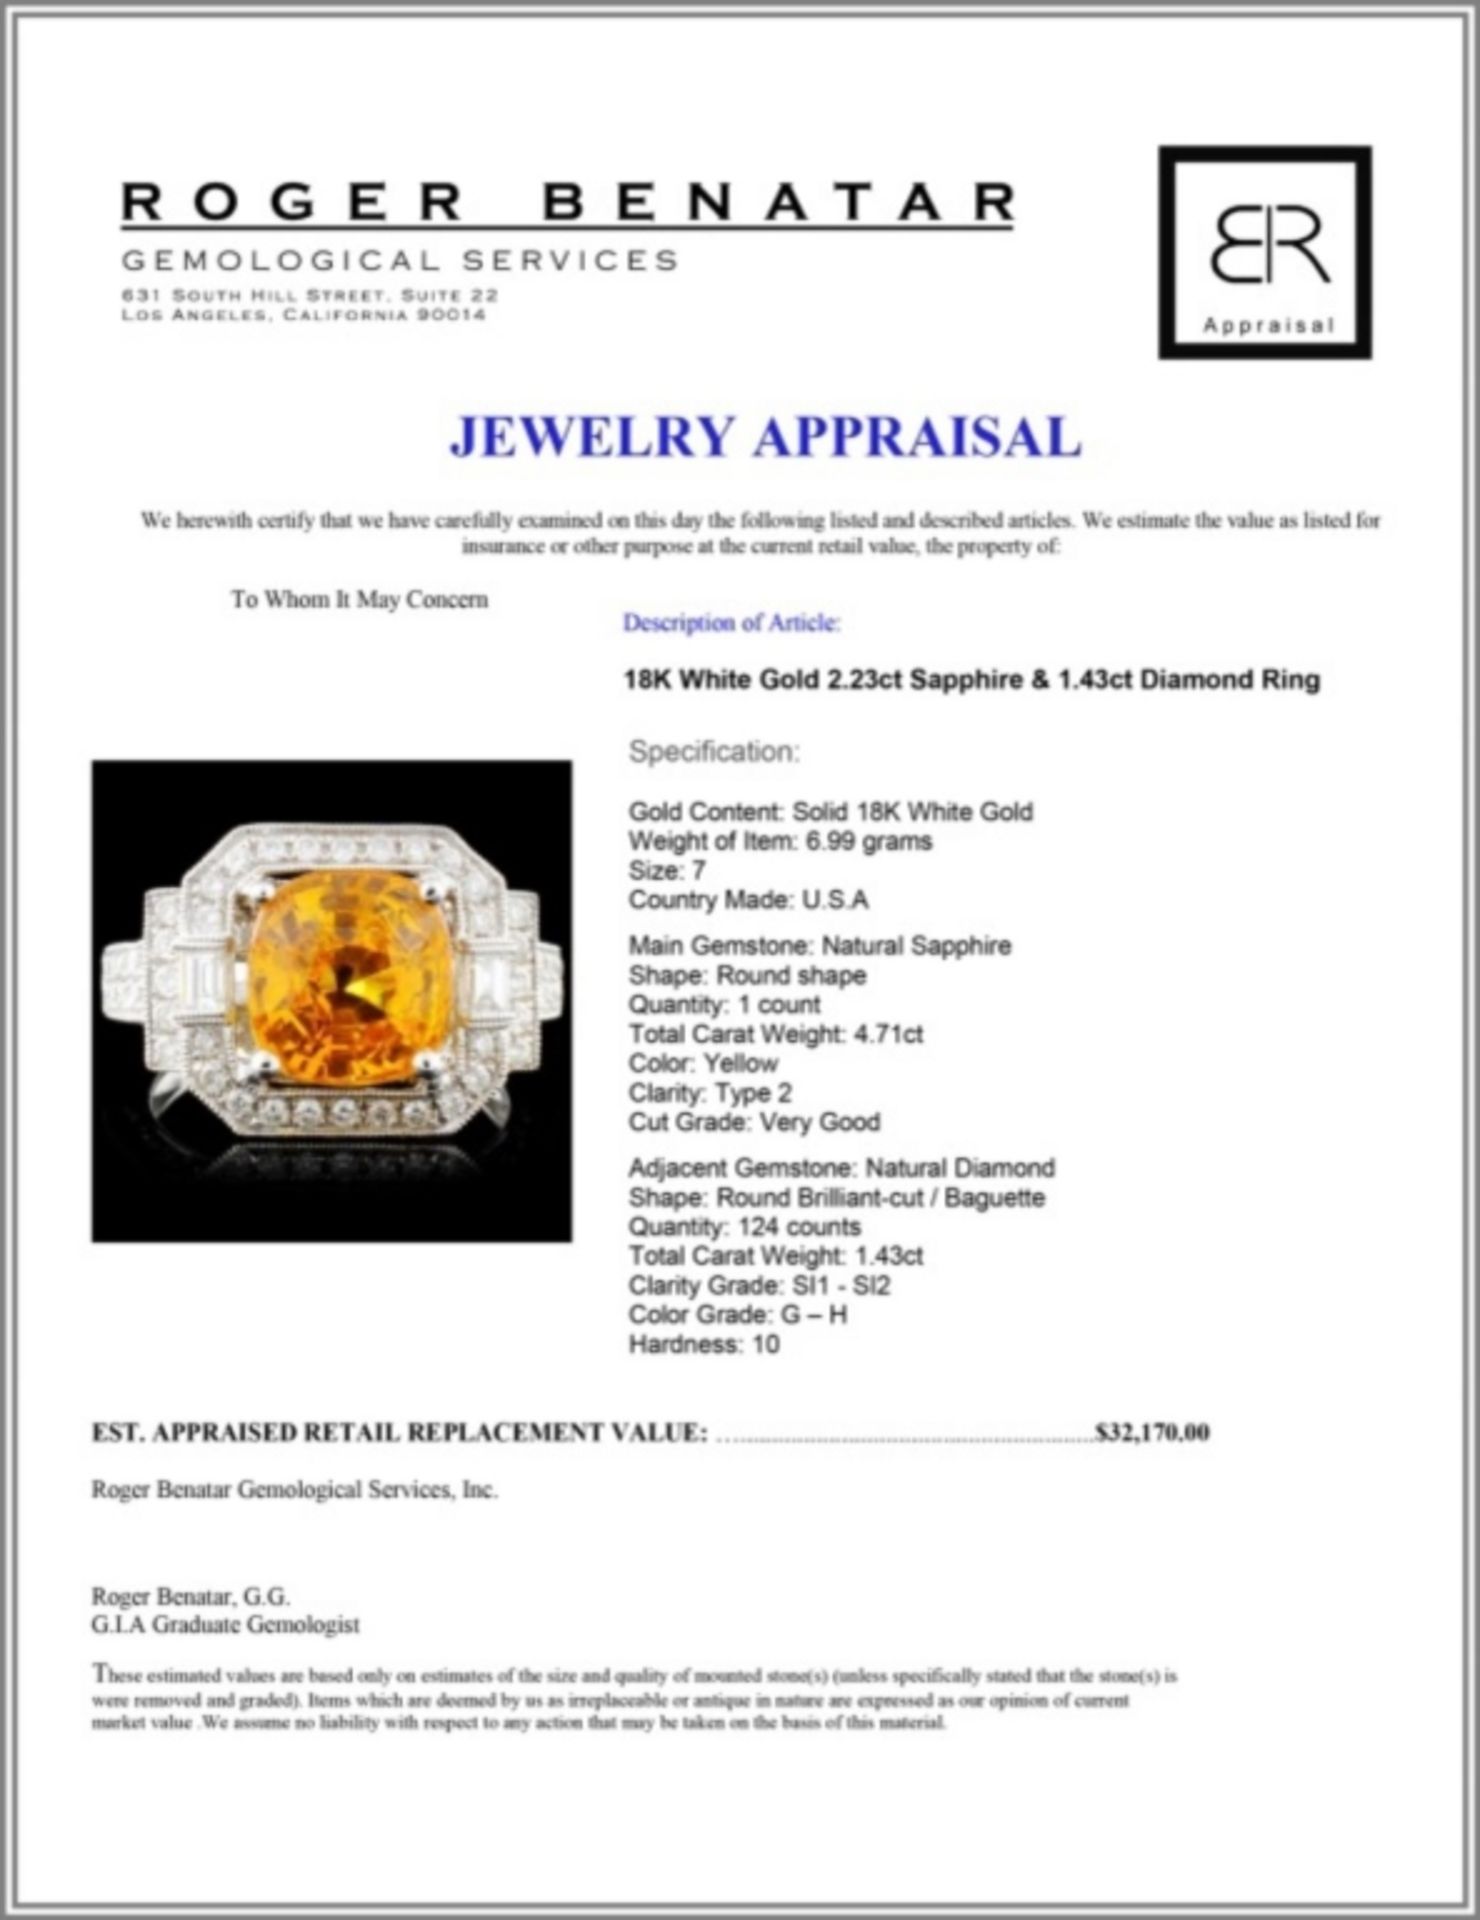 18K White Gold 2.23ct Sapphire & 1.43ct Diamond Ri - Image 4 of 4